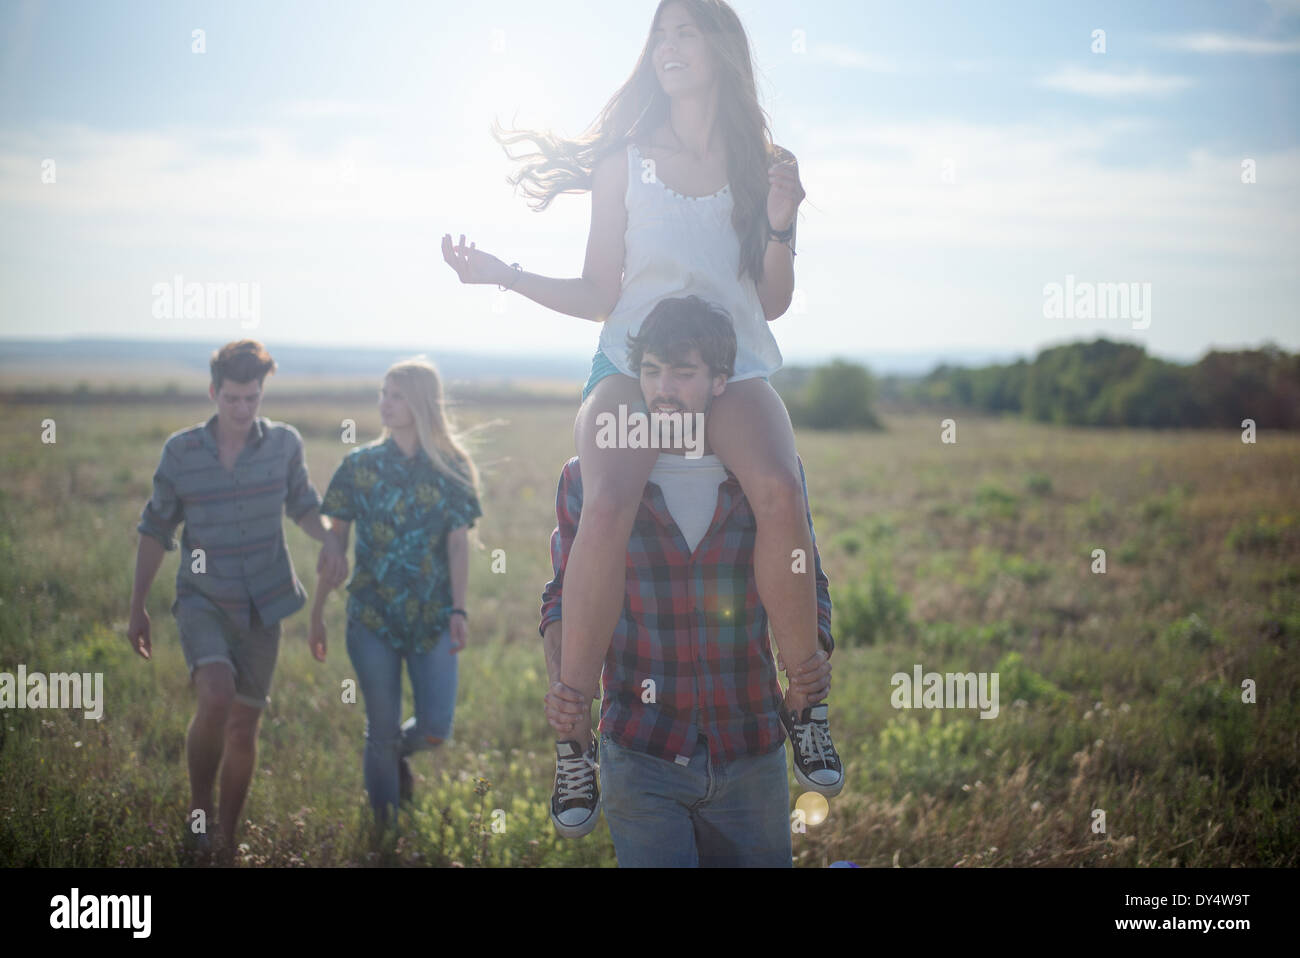 Friends walking in field, man carrying woman on shoulders Stock Photo